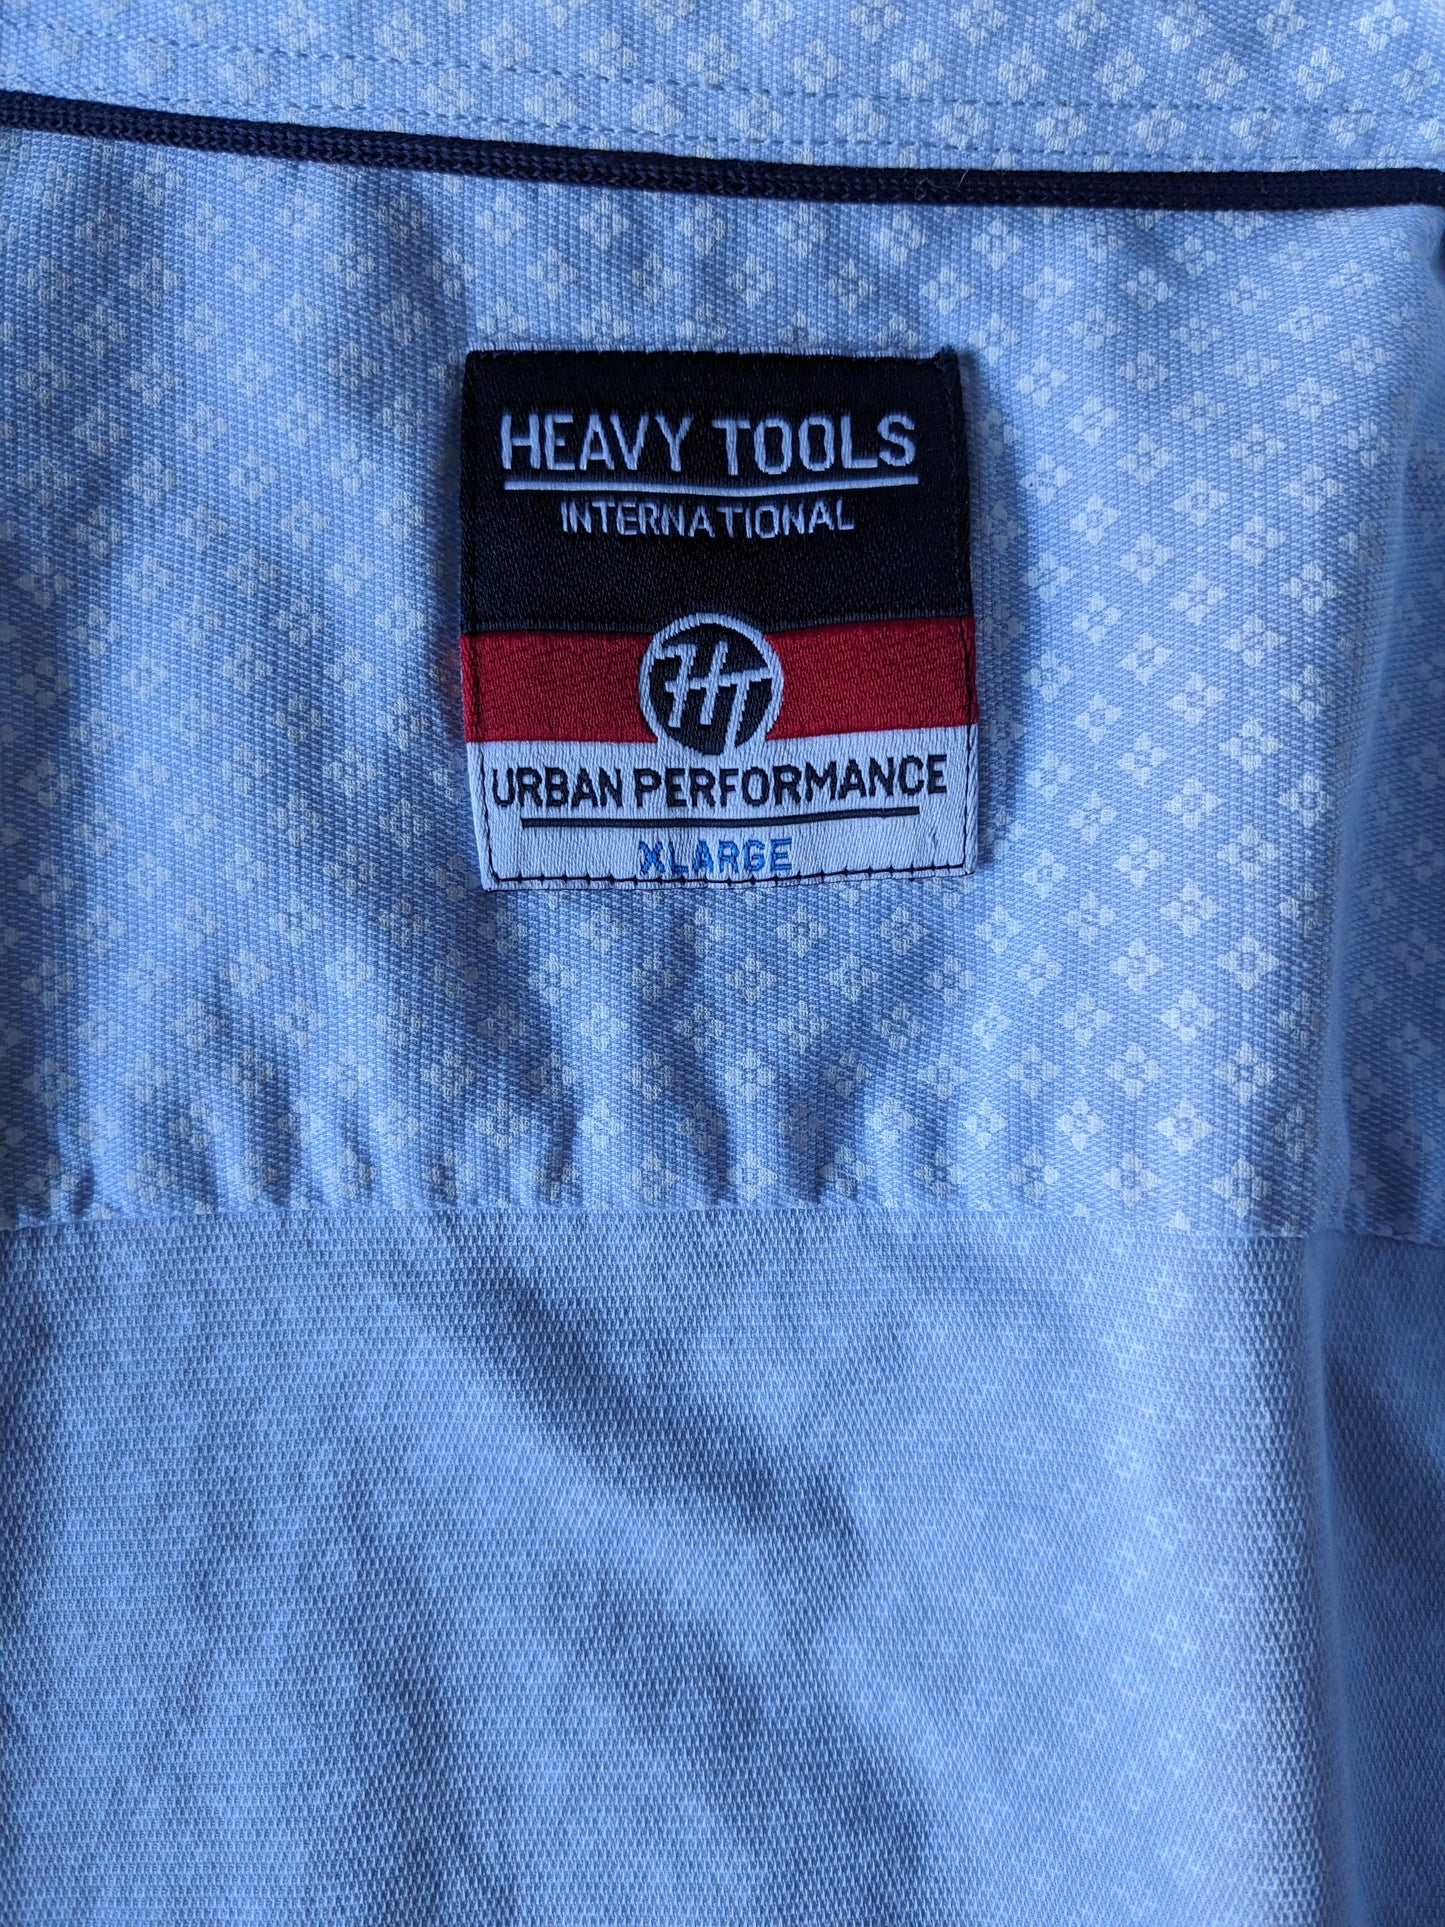 Camisa de herramientas pesadas. Estampado blanco azul. Tamaño xl. Ajustado.